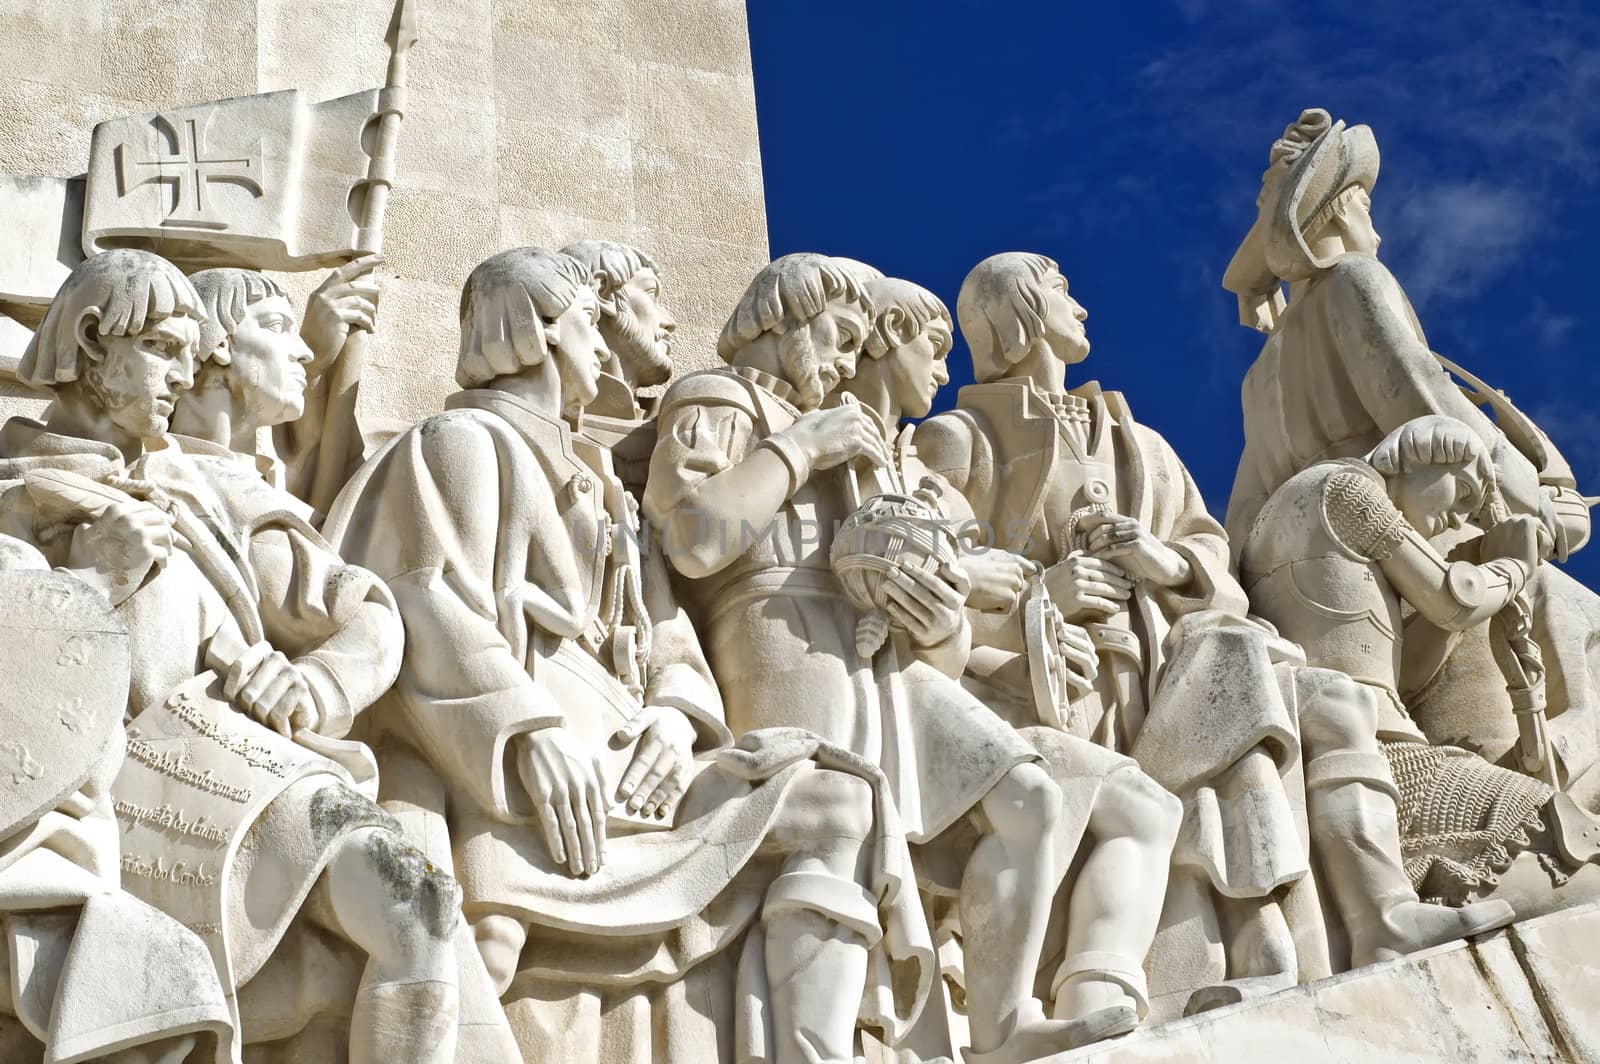 Discoveries Monument (Padrão dos descobrimentos) in Lisbon, Portugal